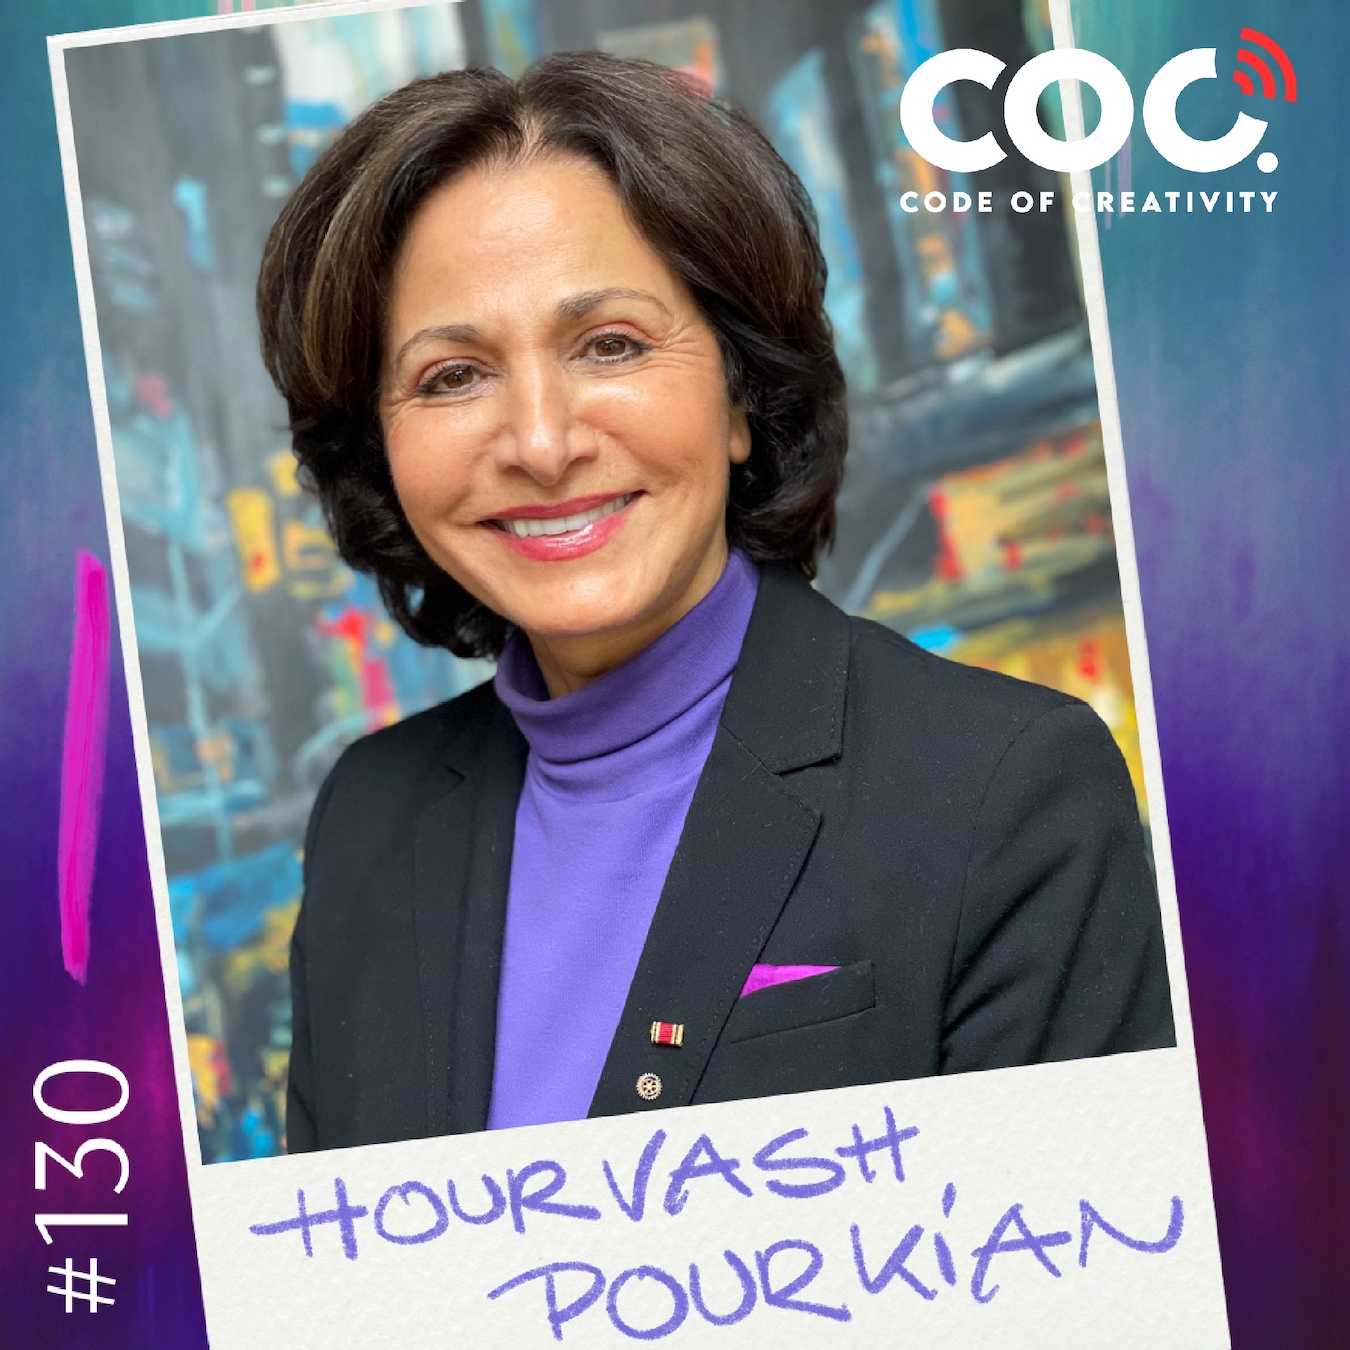 #130 Hourvash Pourkian - Frauenrechtsaktivistin - Unternehmerin - Autorin